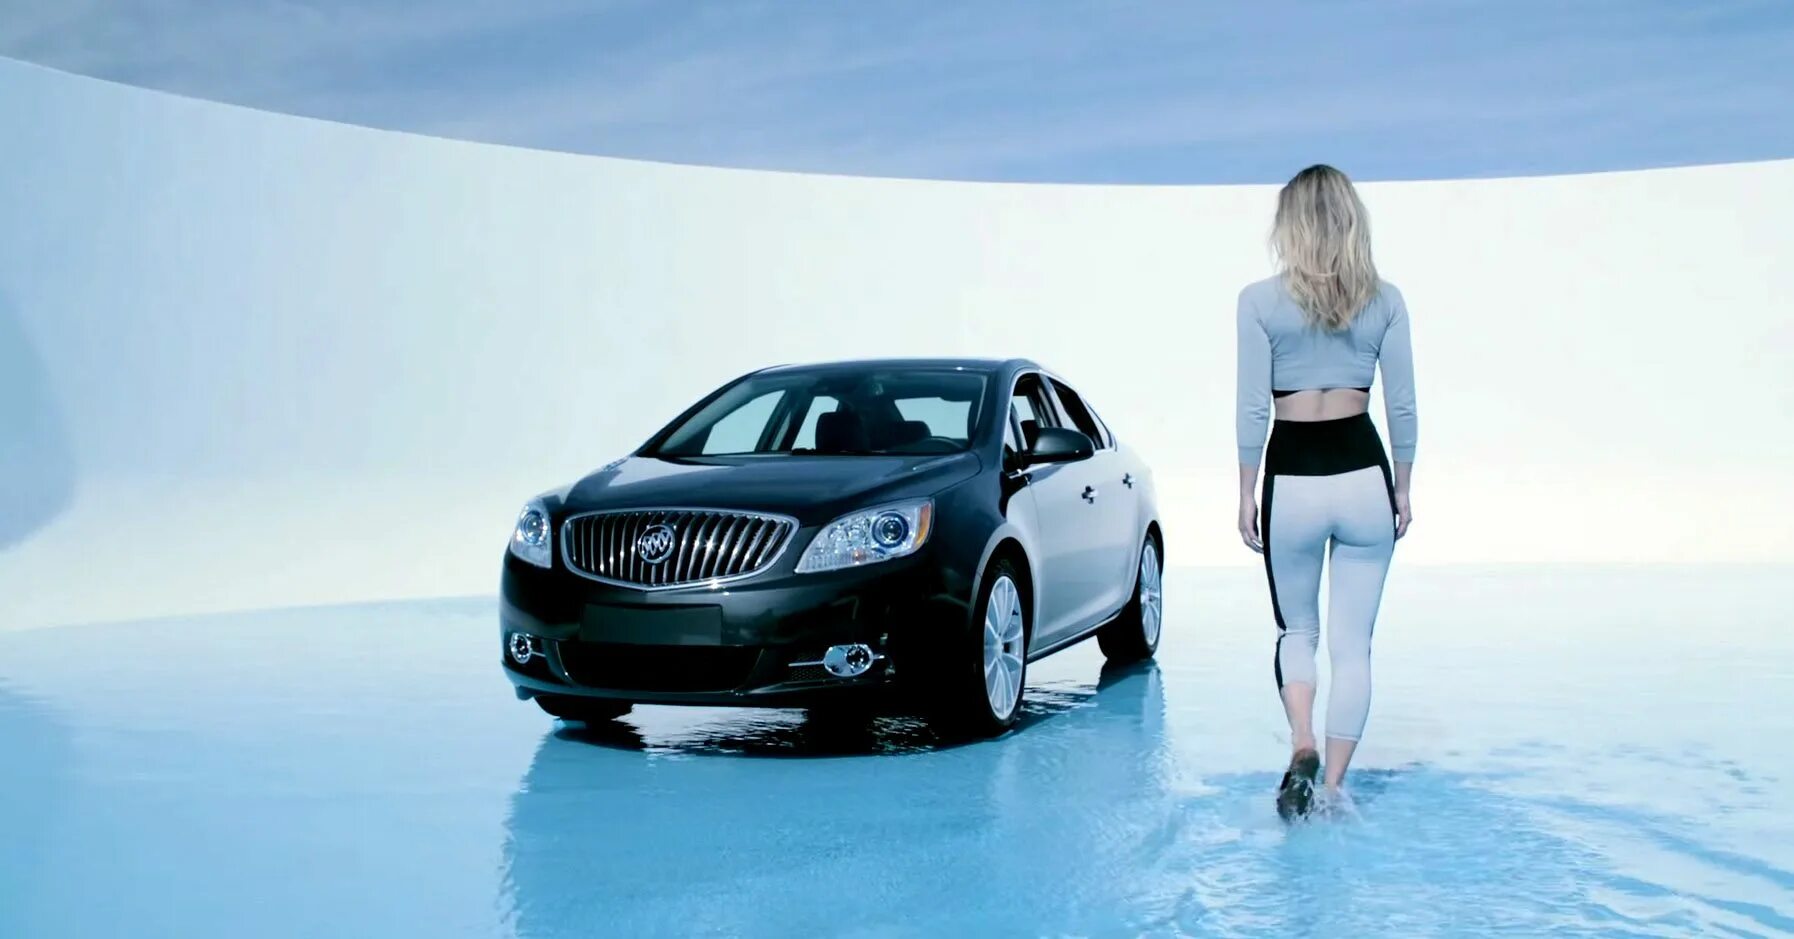 Авто показы рекламы. Реклама автомобилей видео. Лагуну реклама машины. Покажи автомобили из рекламы. Страшная реклама авто